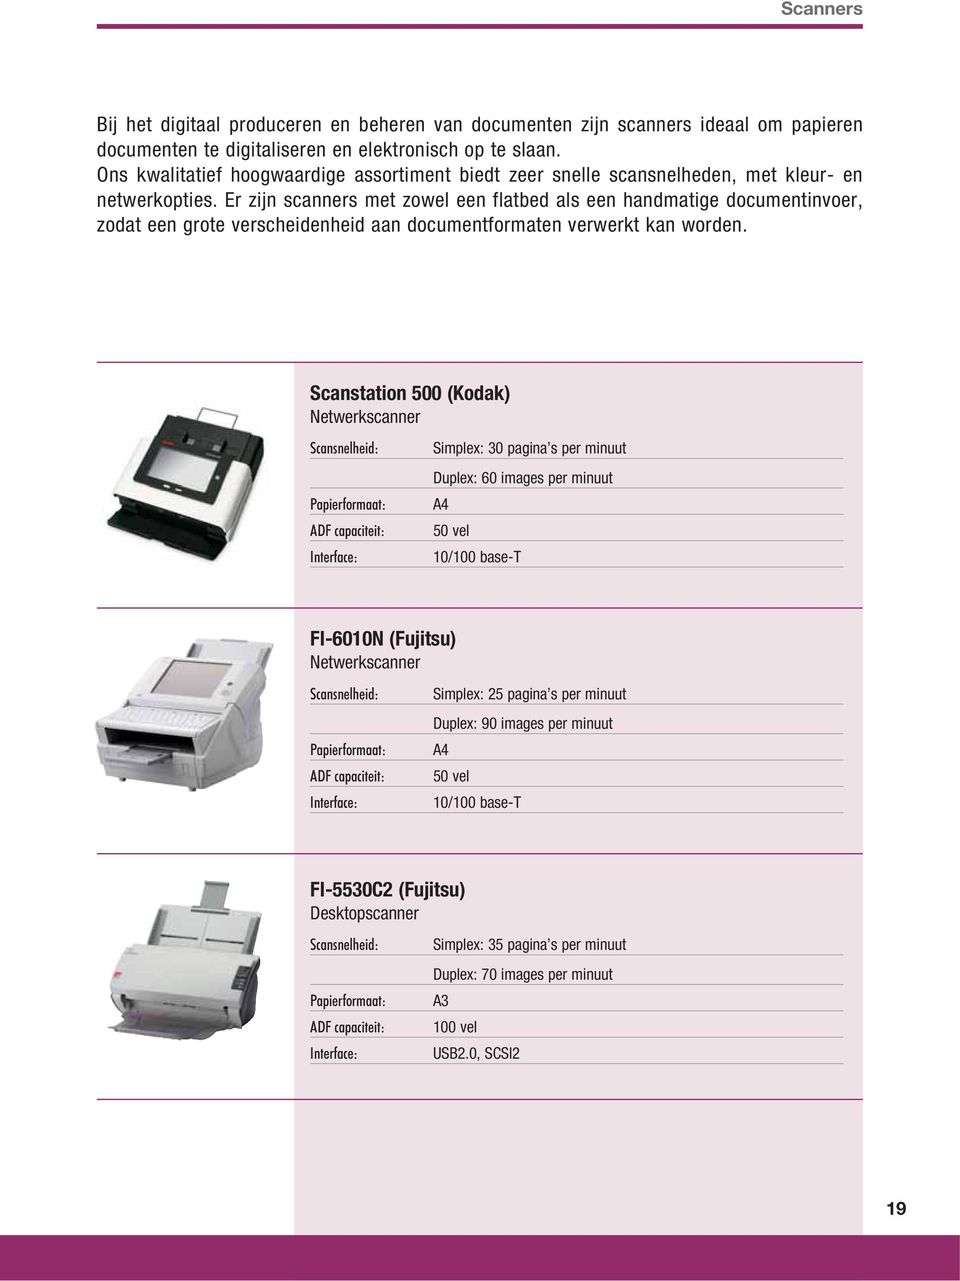 Er zijn scanners met zowel een flatbed als een handmatige documentinvoer, zodat een grote verscheidenheid aan documentformaten verwerkt kan worden.